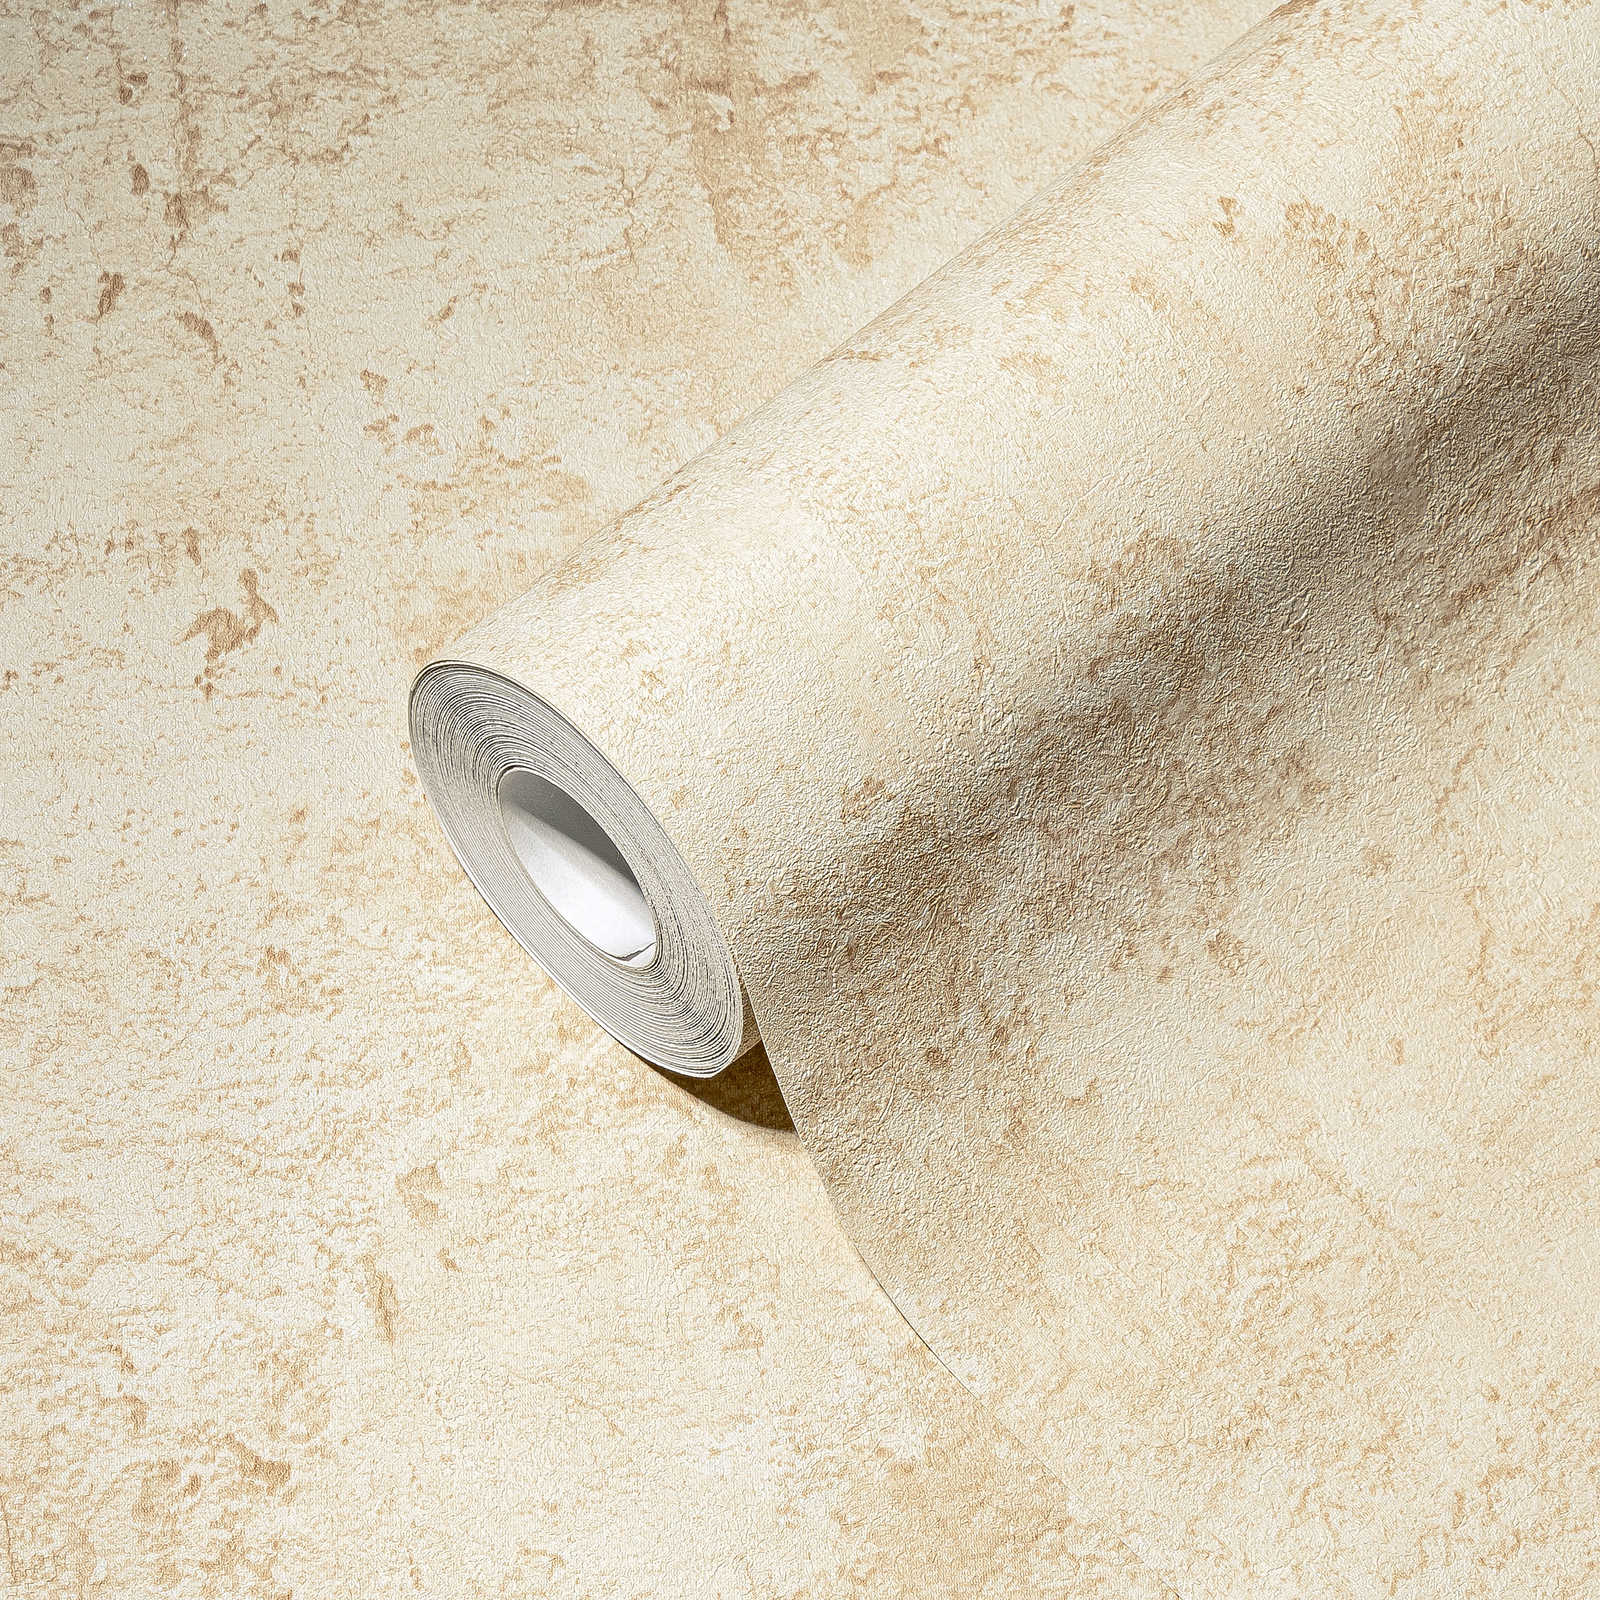             Plaster optics wallpaper cream-beige, Mediterranean style
        